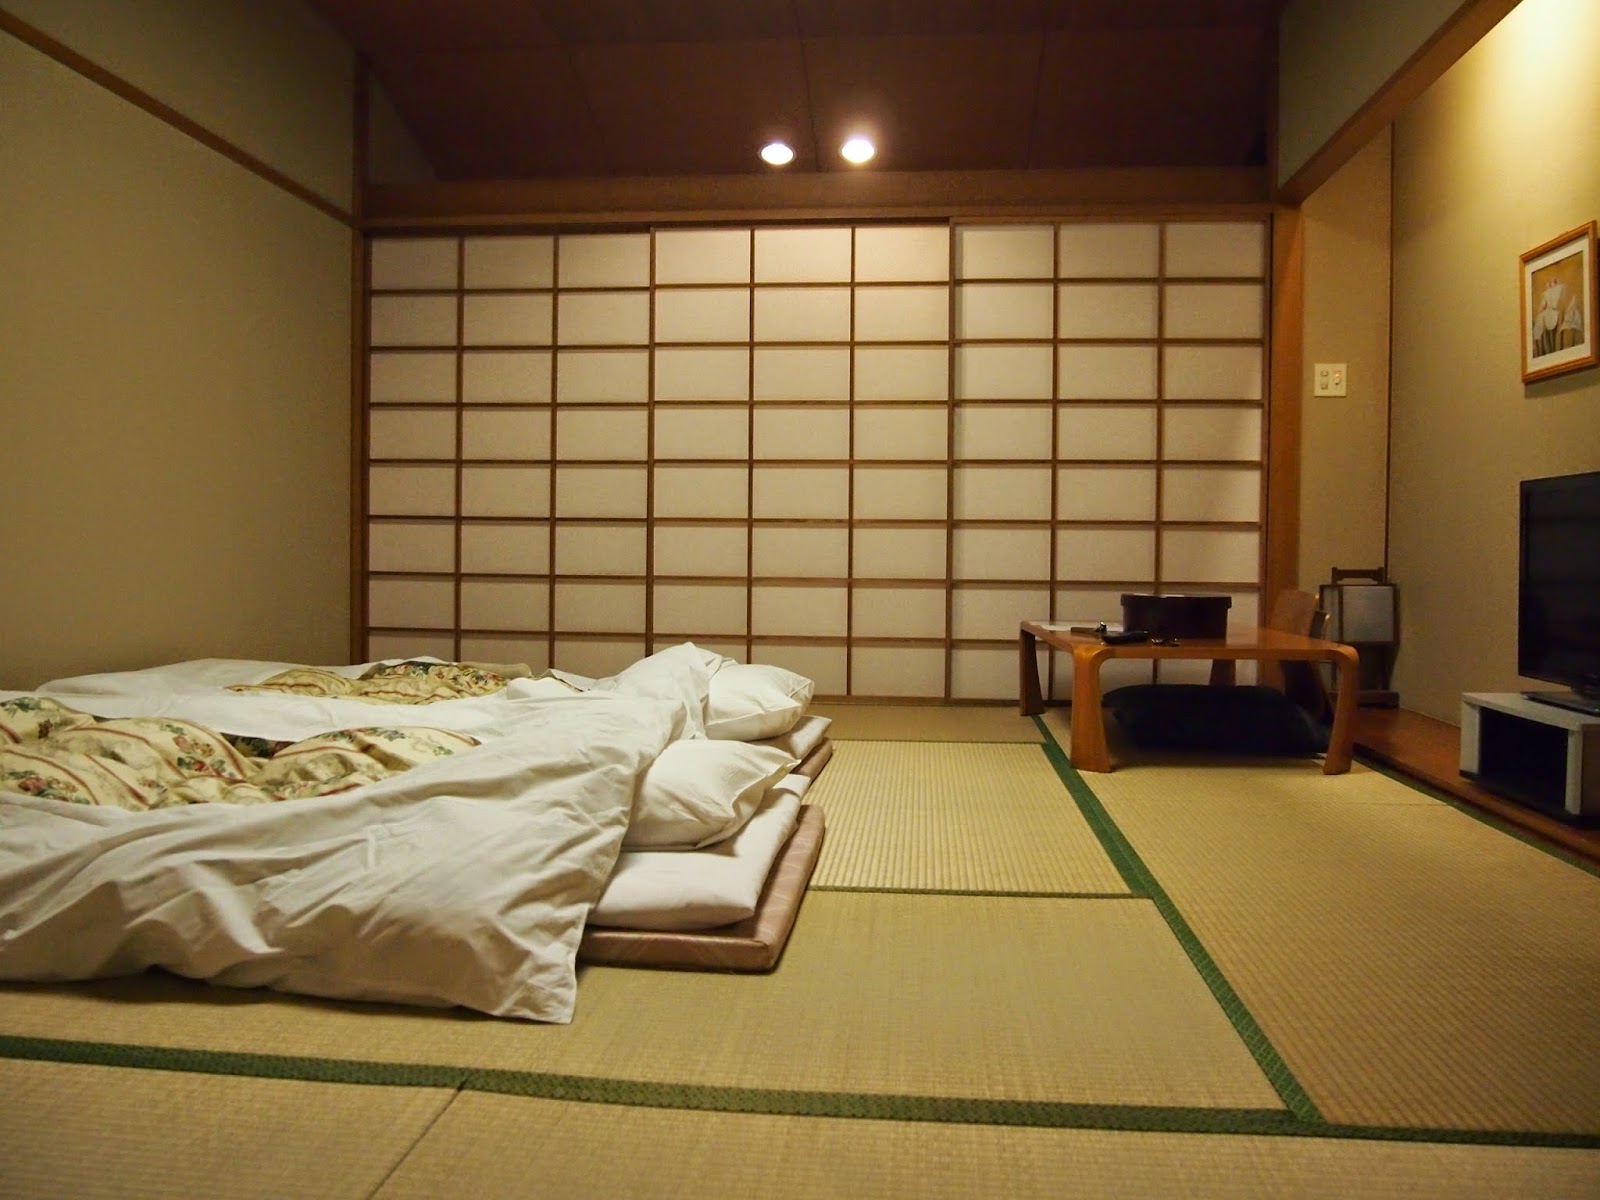 الصورة الداخلية لغرفة نوم على الطراز الياباني